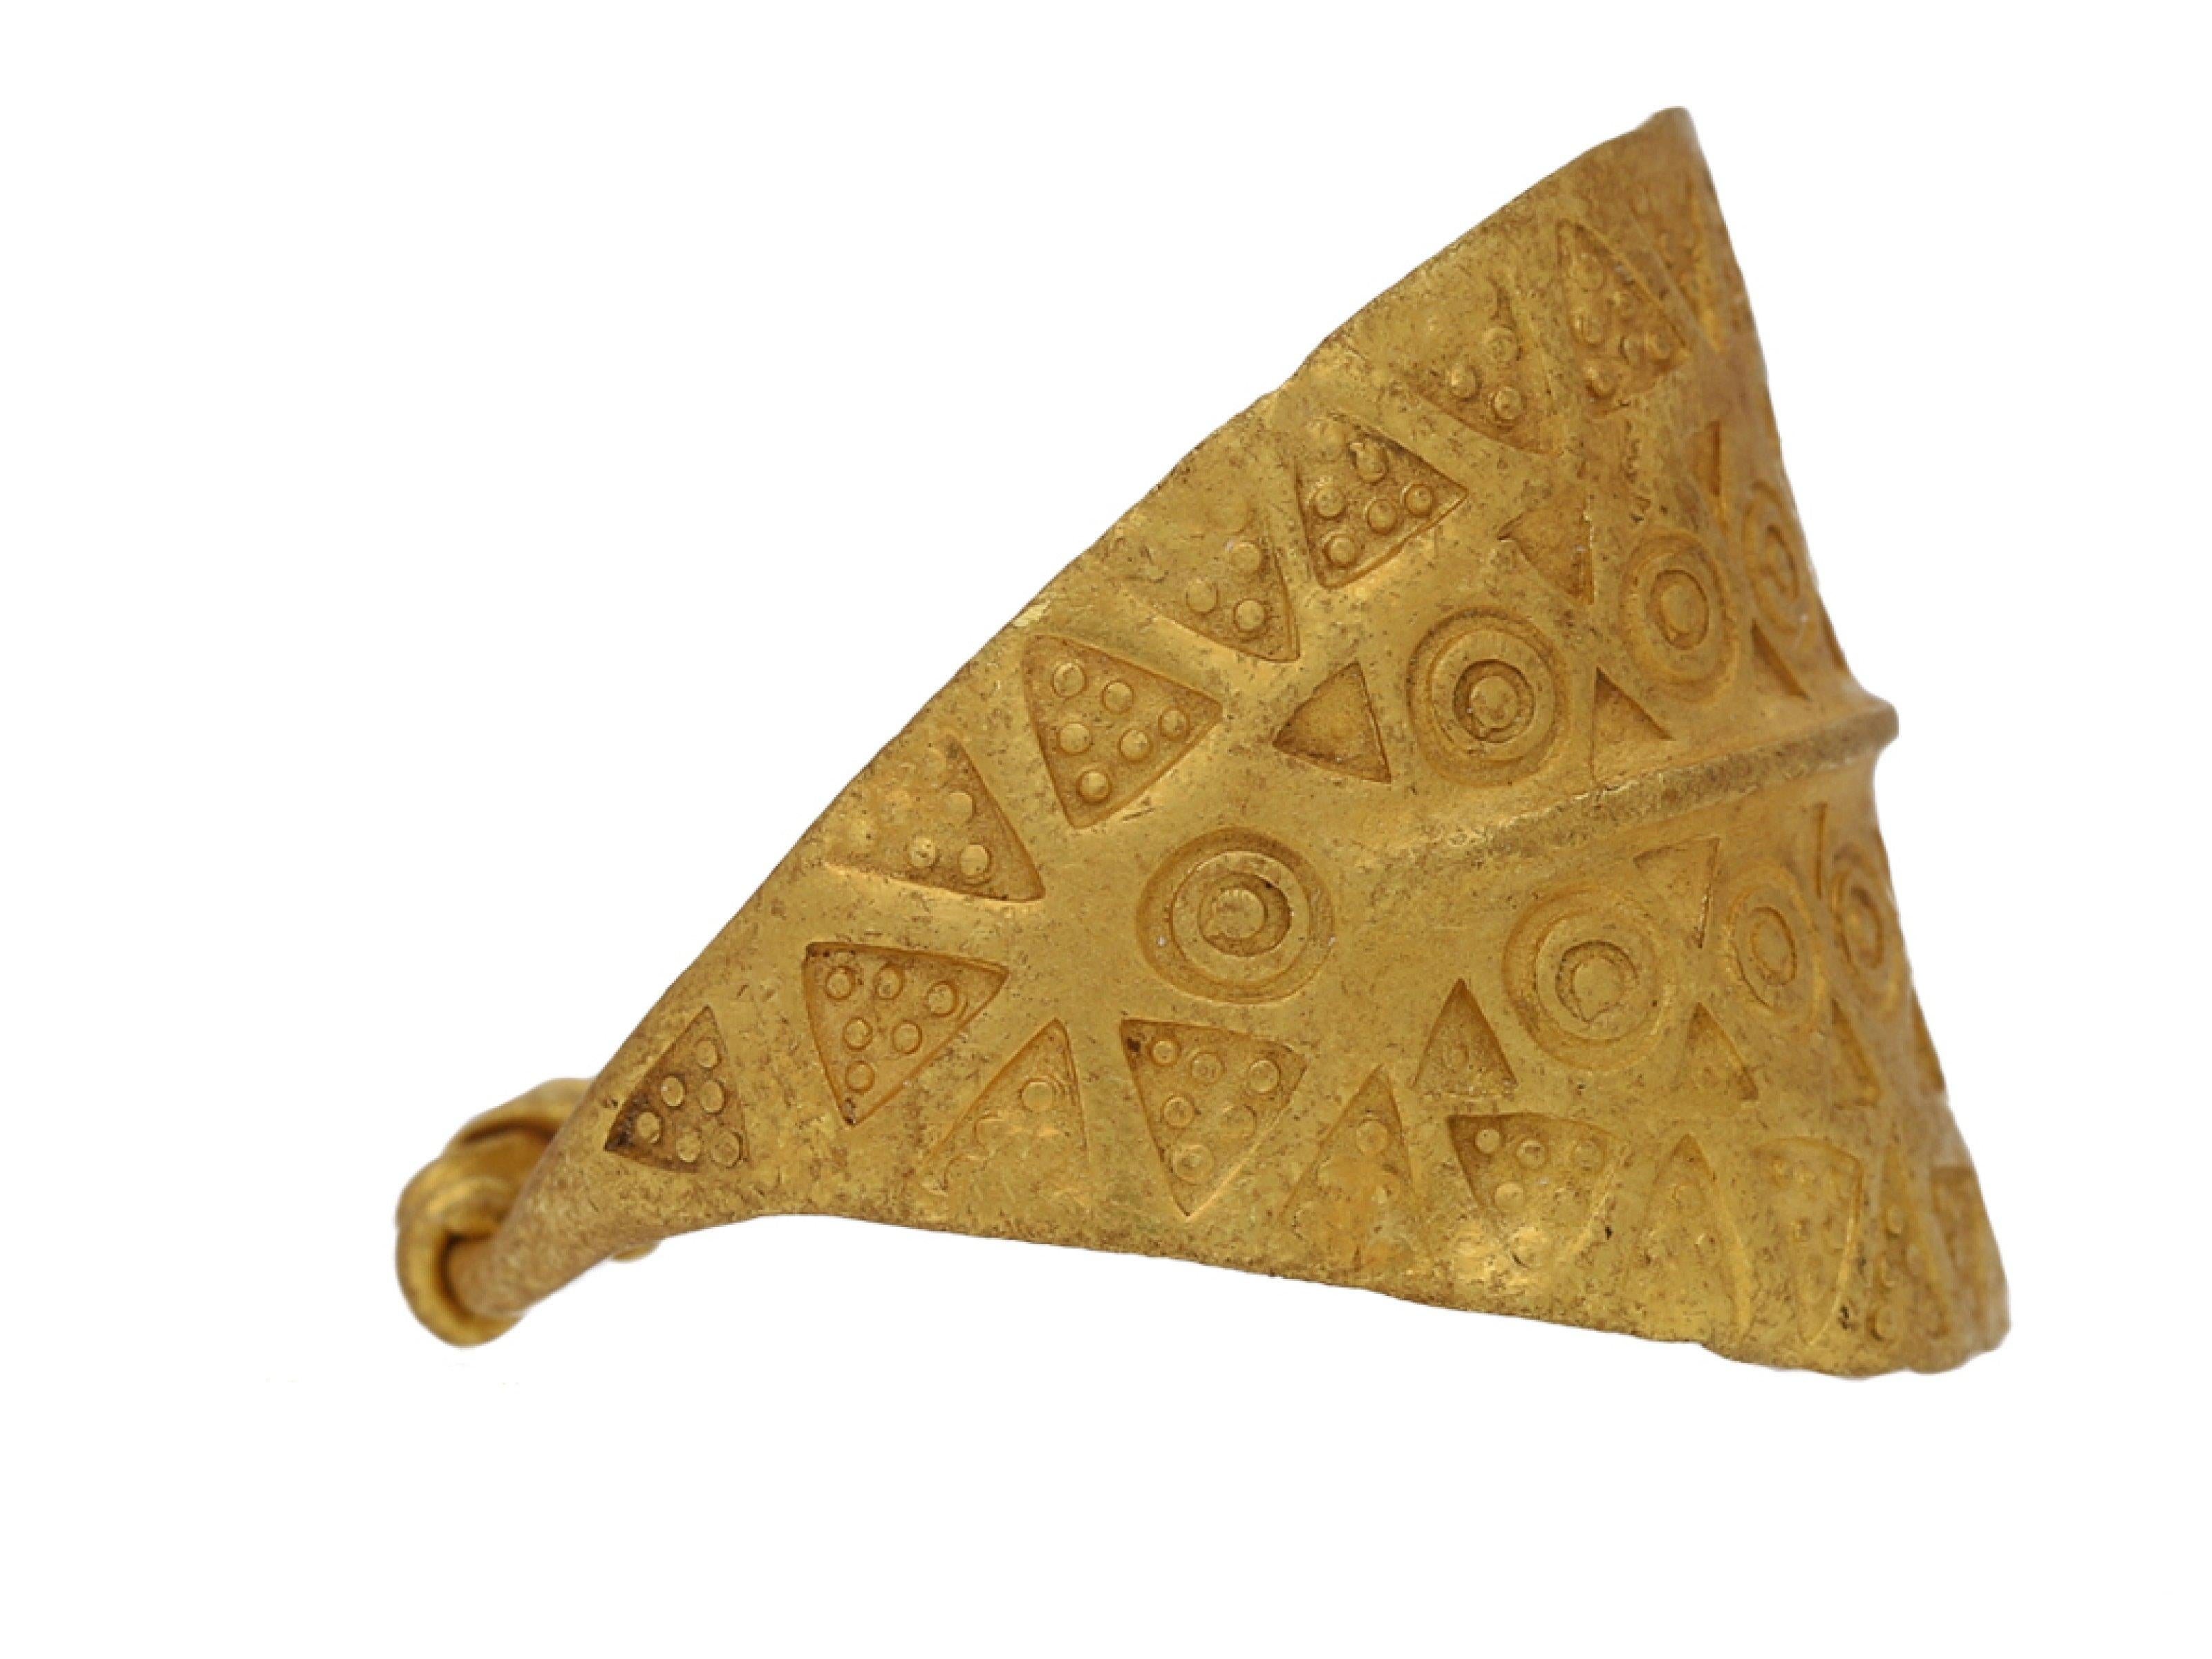 Bague en or estampillée Viking. Une grande bague en or jaune comportant une plaque incurvée en forme de bombe, avec des détails linéaires en relief au centre et décorée d'une série d'estampilles triangulaires et circulaires répétées, les épaules